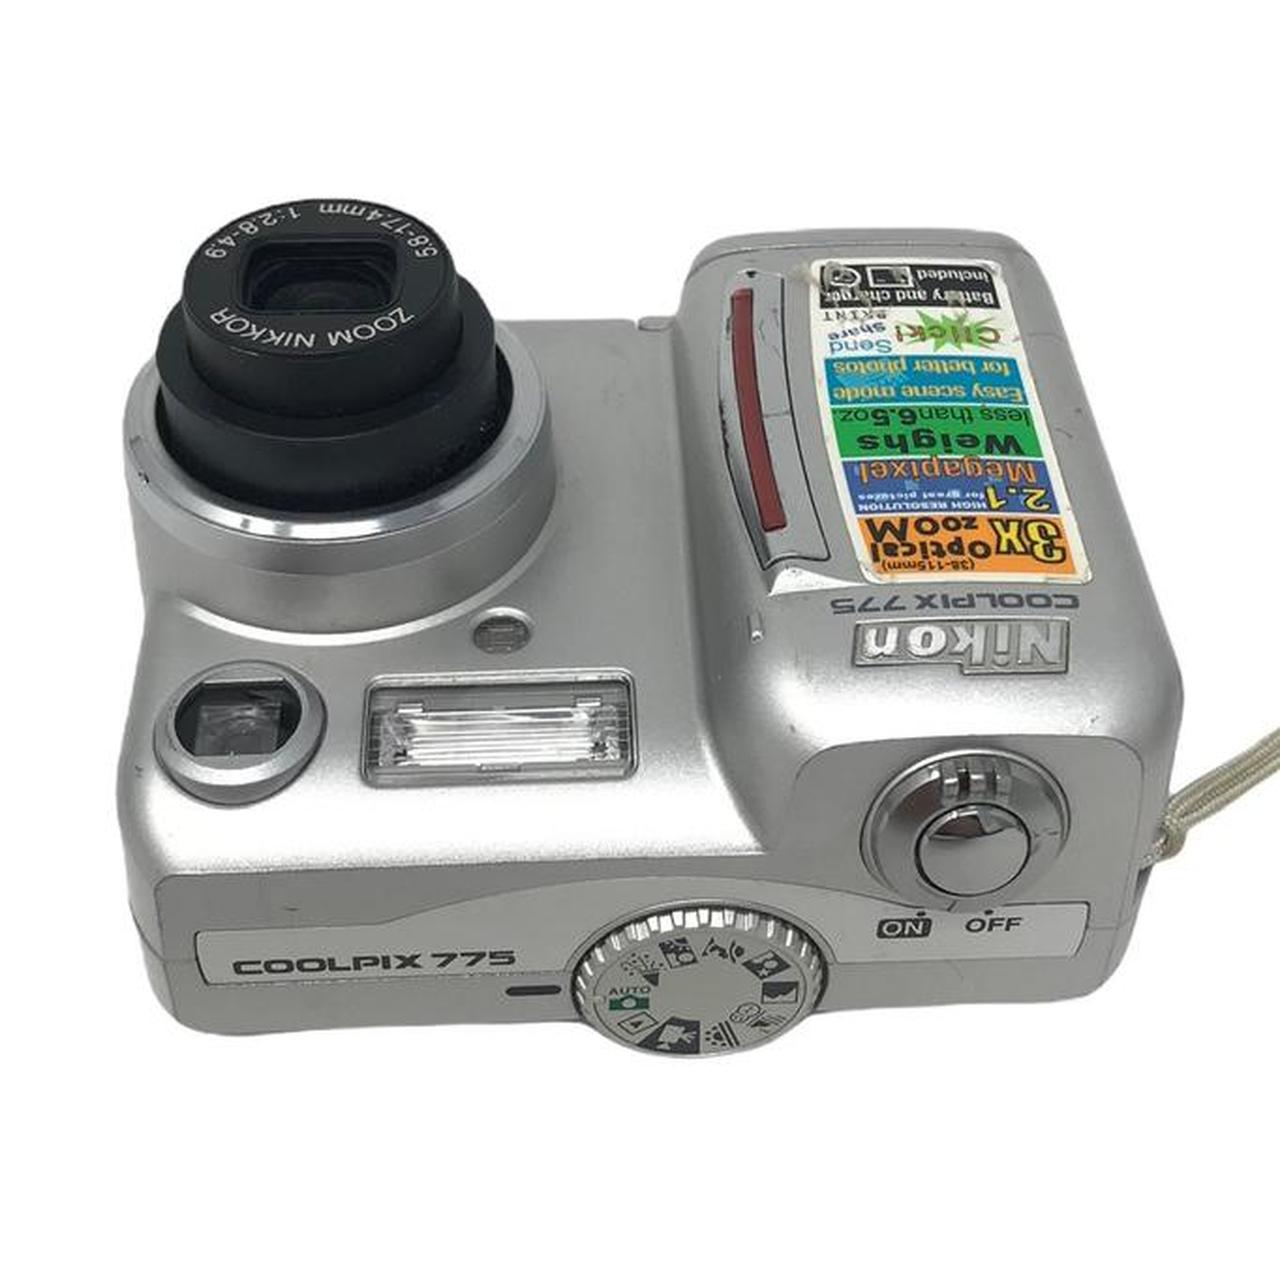 Nikon Cameras-and-accessories (3)